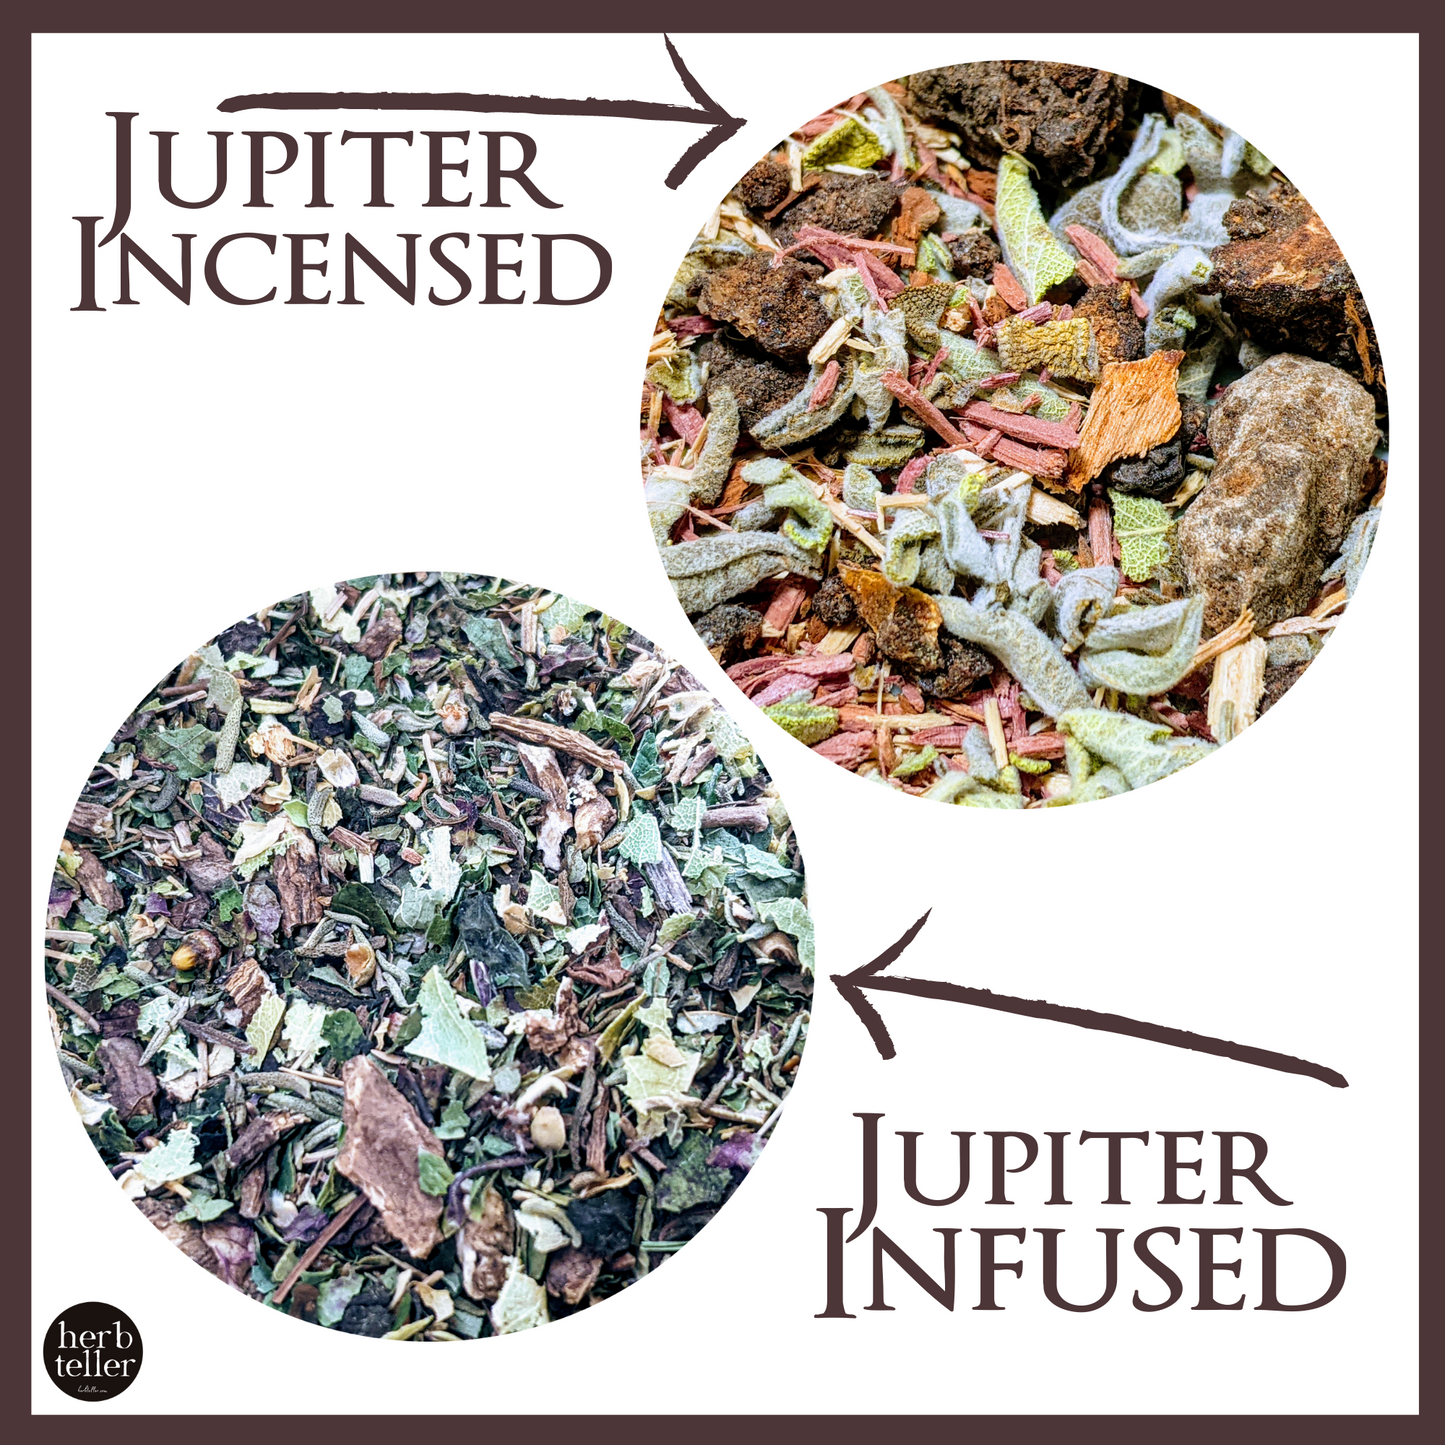 Oh My Jupiter Herbmusement (Tea/Oil/Incense) Ritual Set